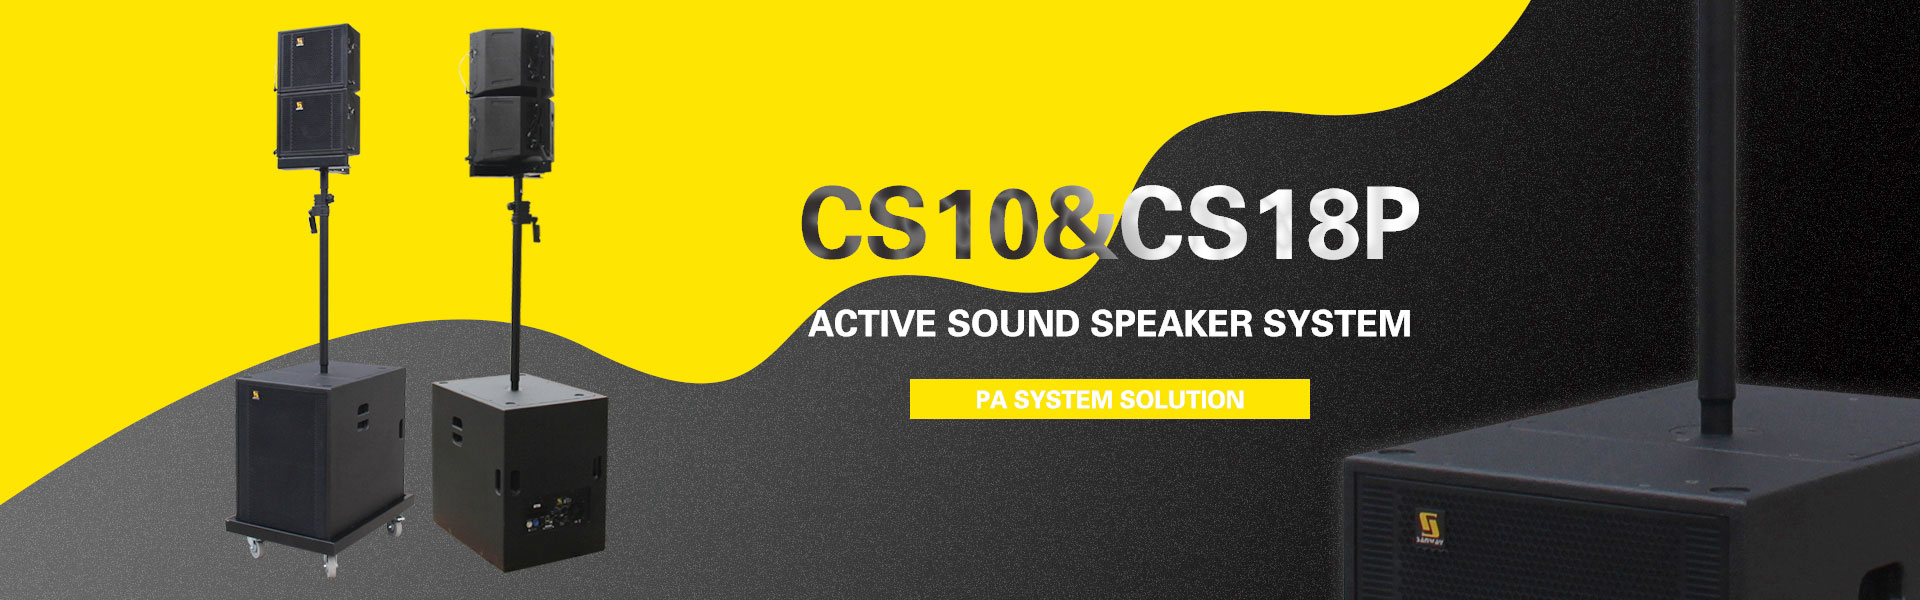 CS10-banner